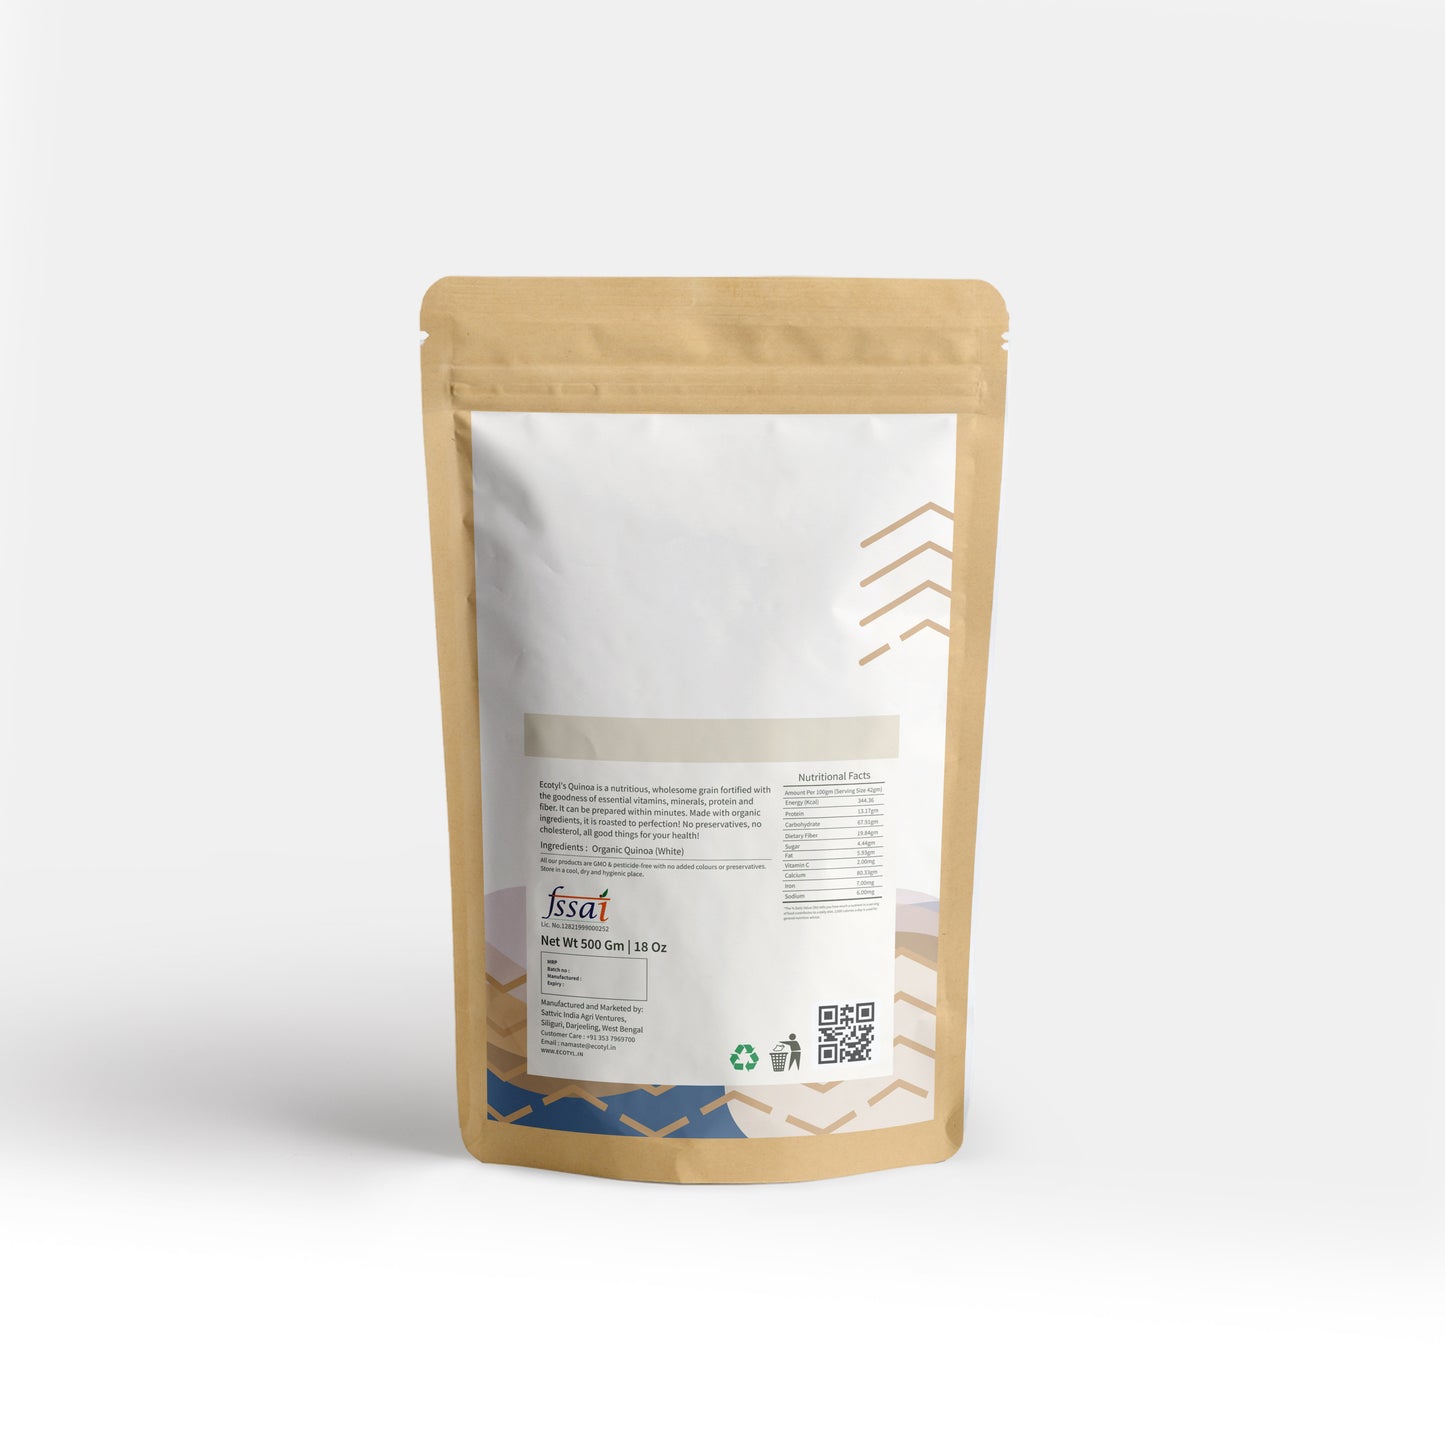 
                  
                    Ecotyl Organic Quinoa (White) (500g)
                  
                